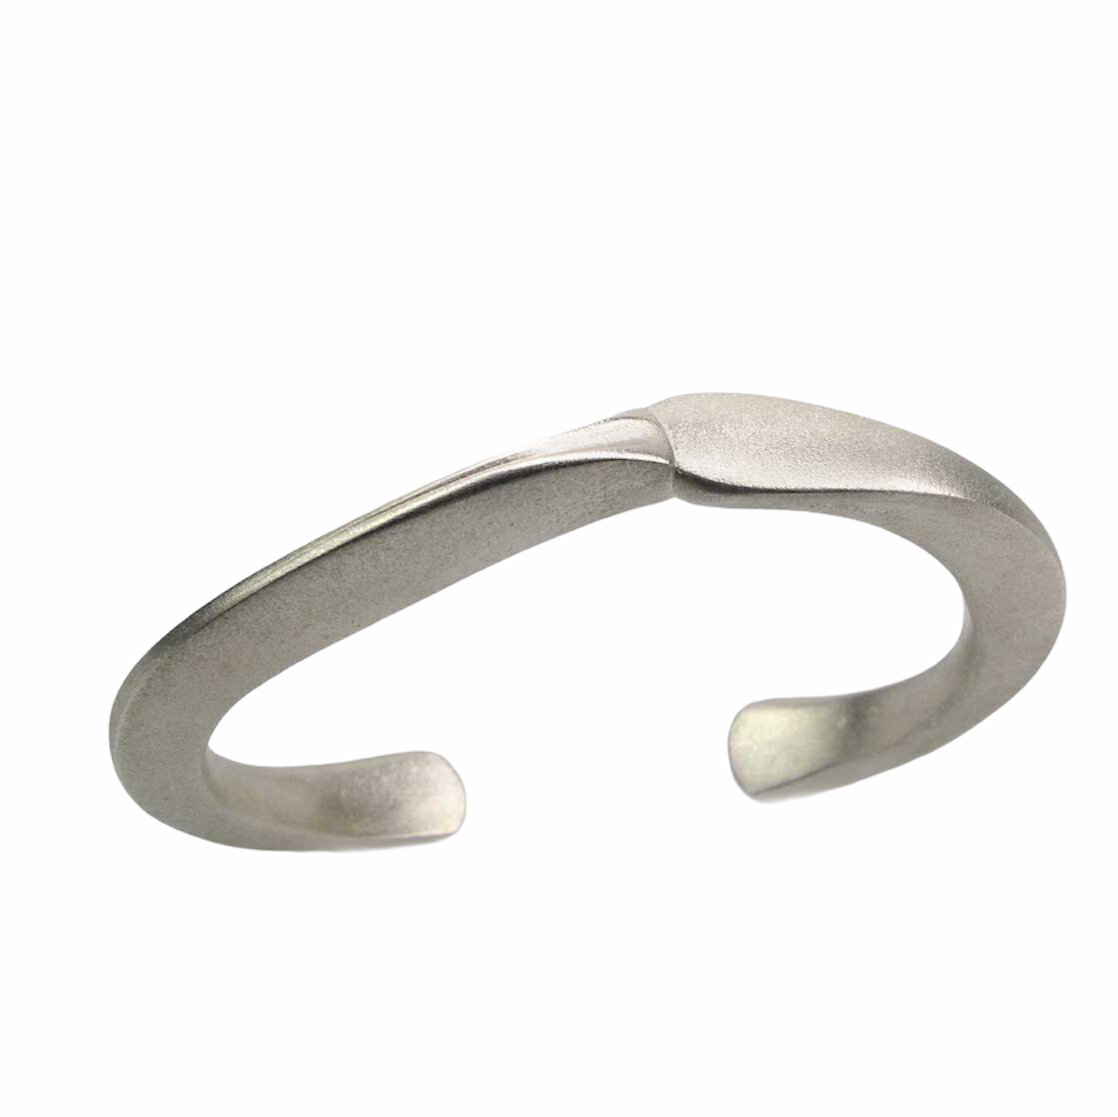 Silver forged cuff — Grinstein Jewelry & Design